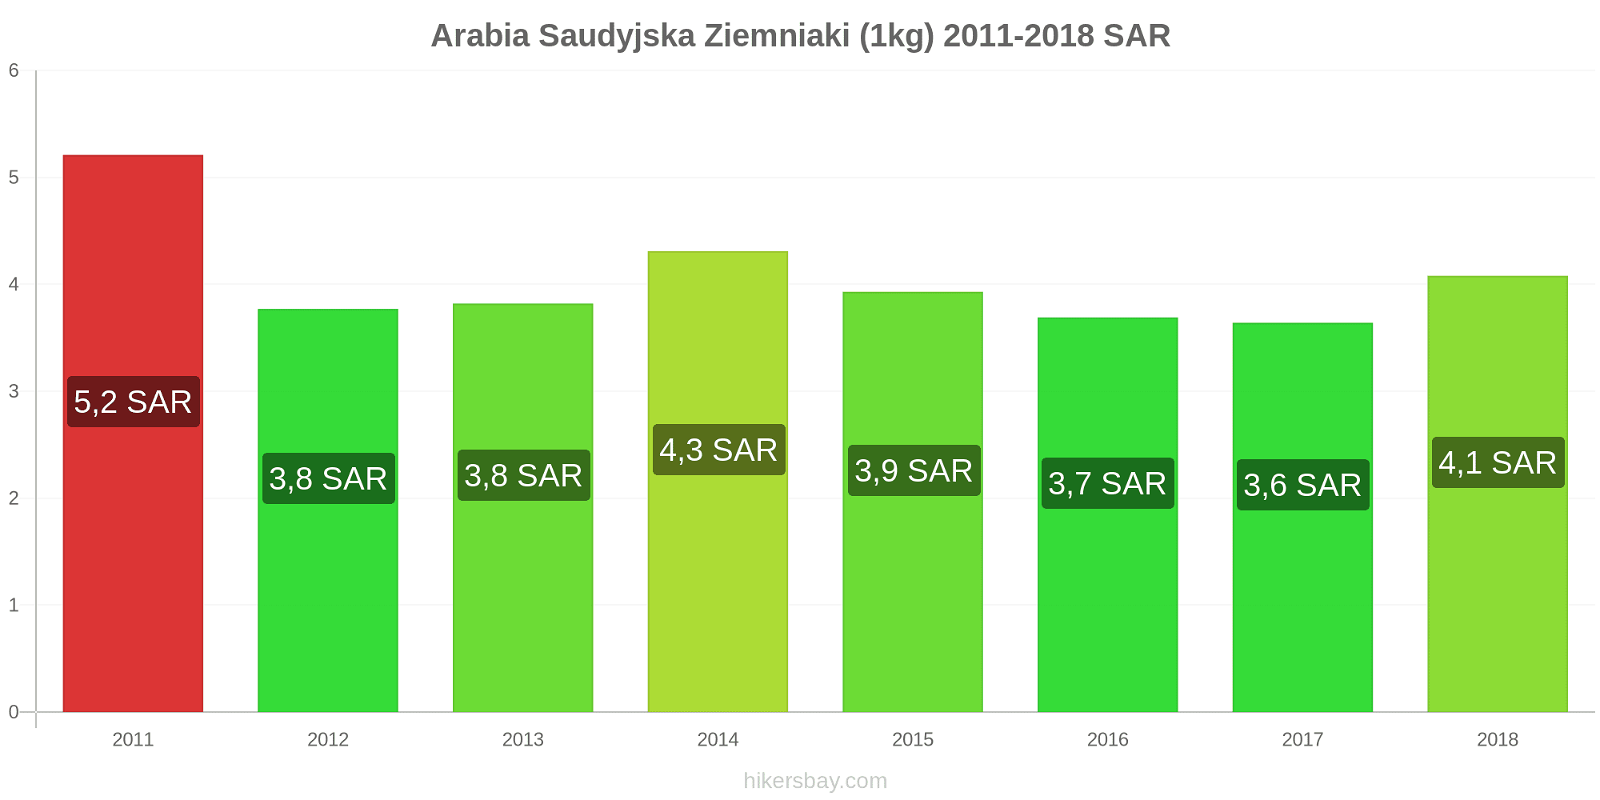 Arabia Saudyjska zmiany cen Ziemniaki (1kg) hikersbay.com